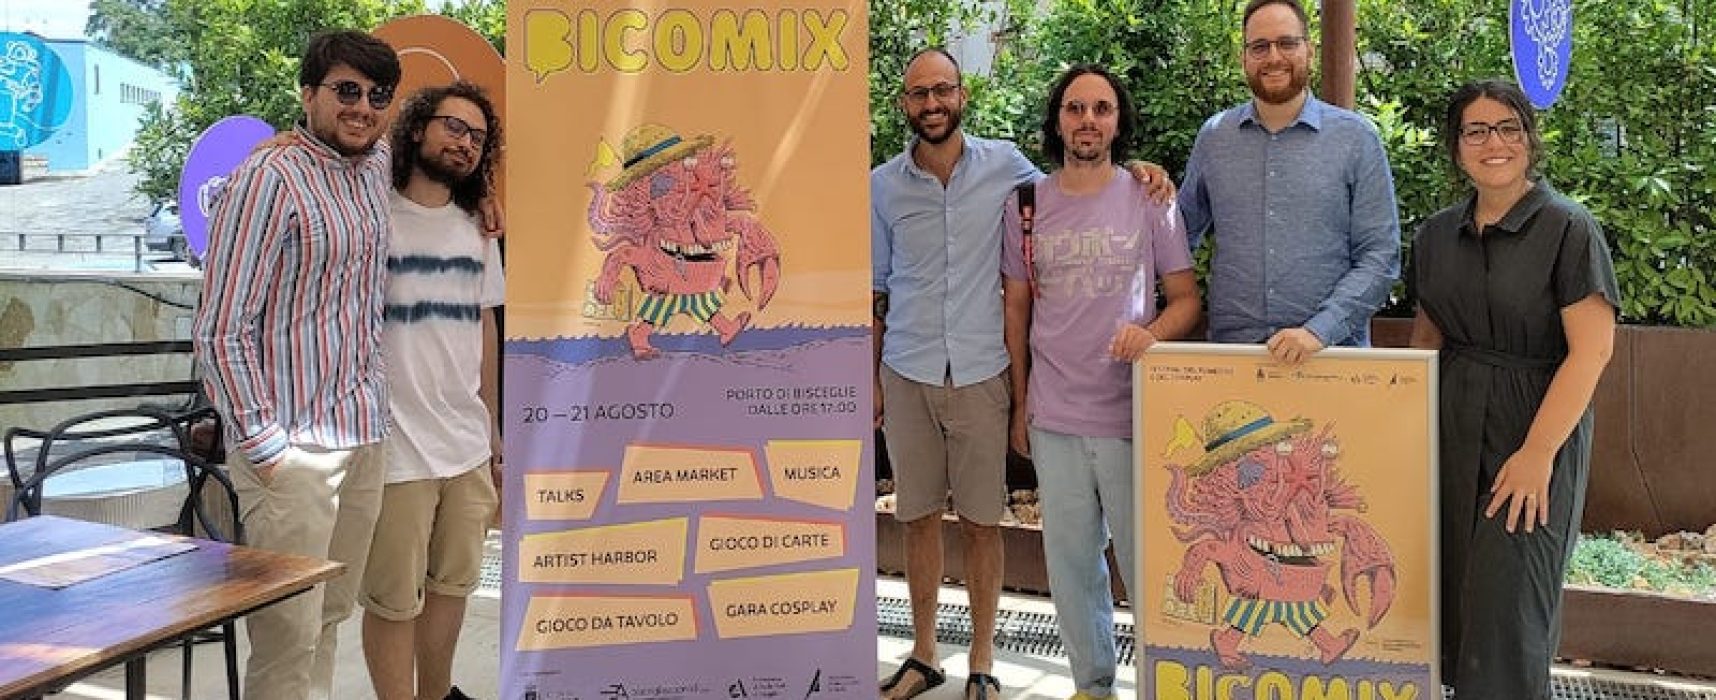 La terza edizione del BiComix si svela al pubblico: ospiti di punta Spugna e Taddei